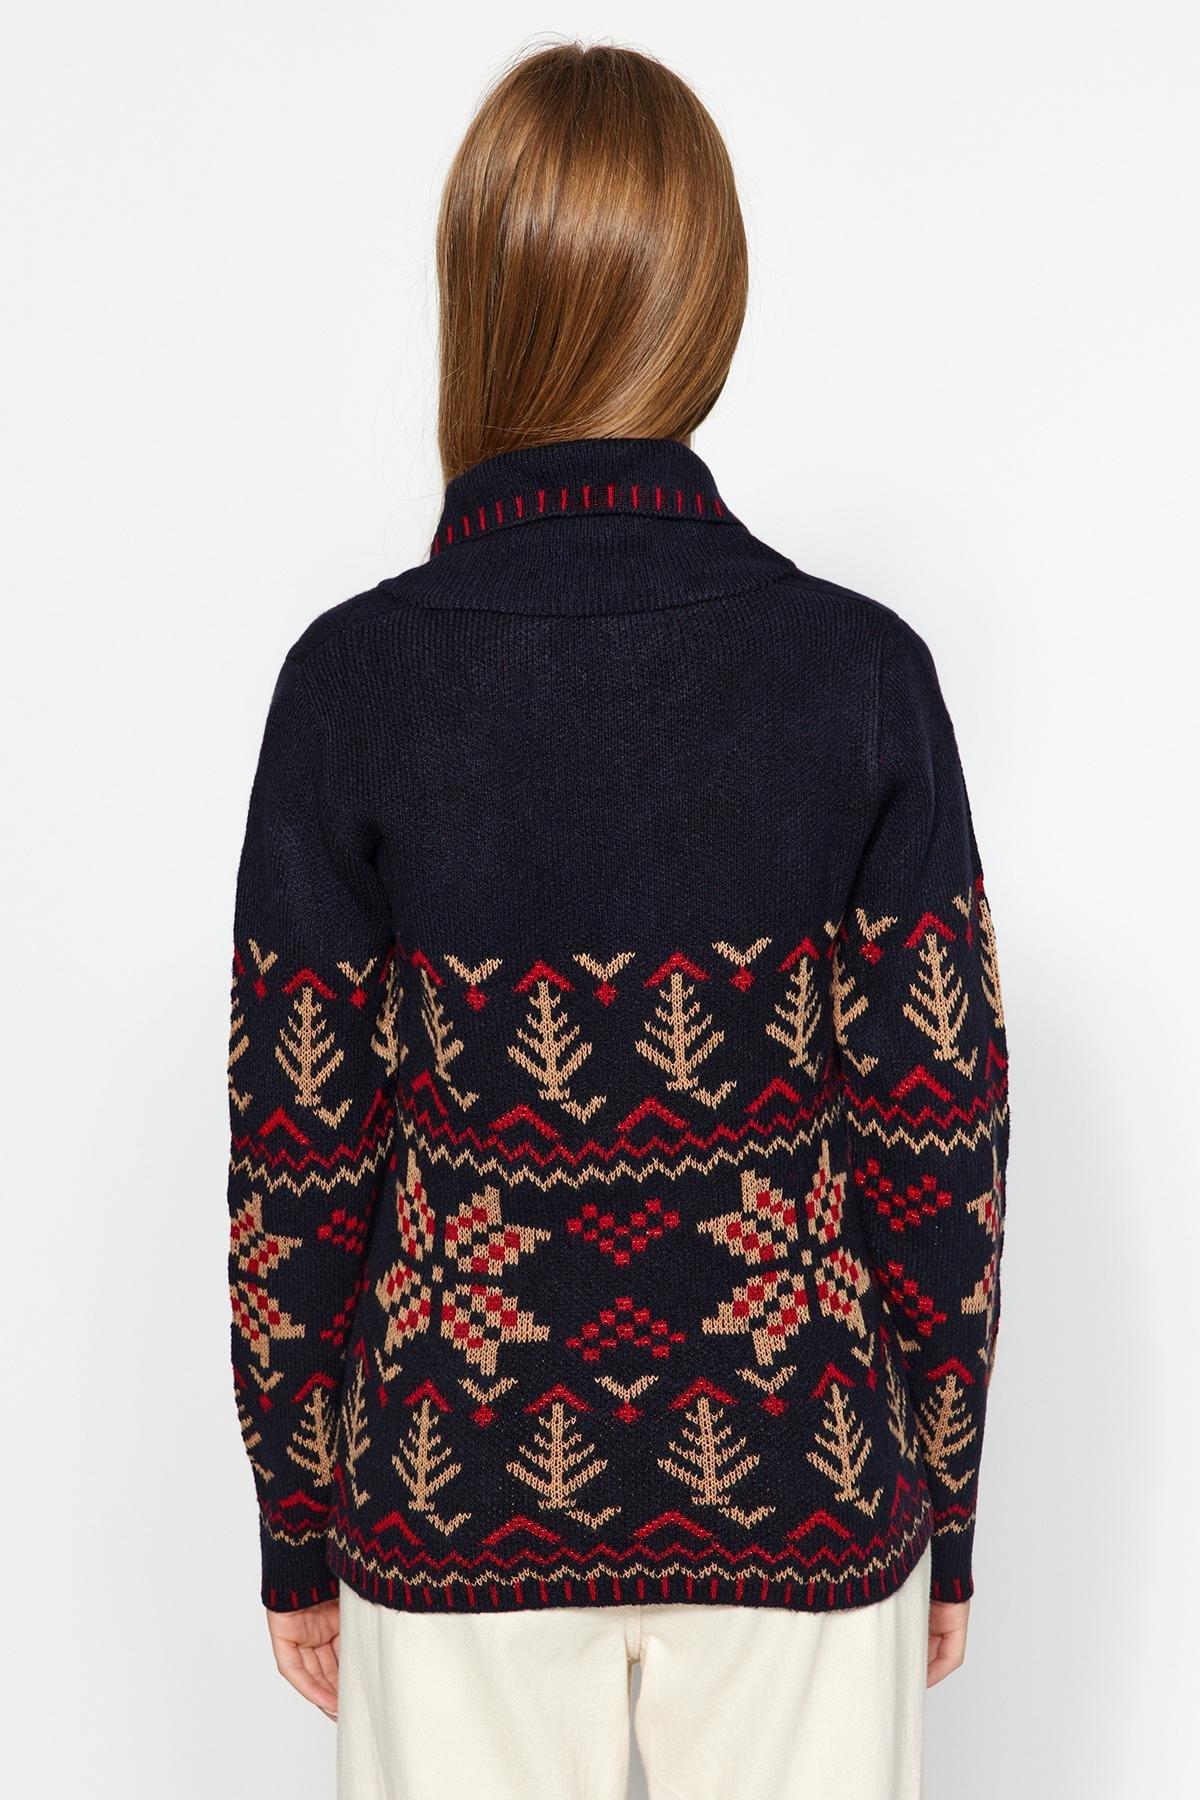 Trendyol - Blue Textured Patterned Knitwear Sweater